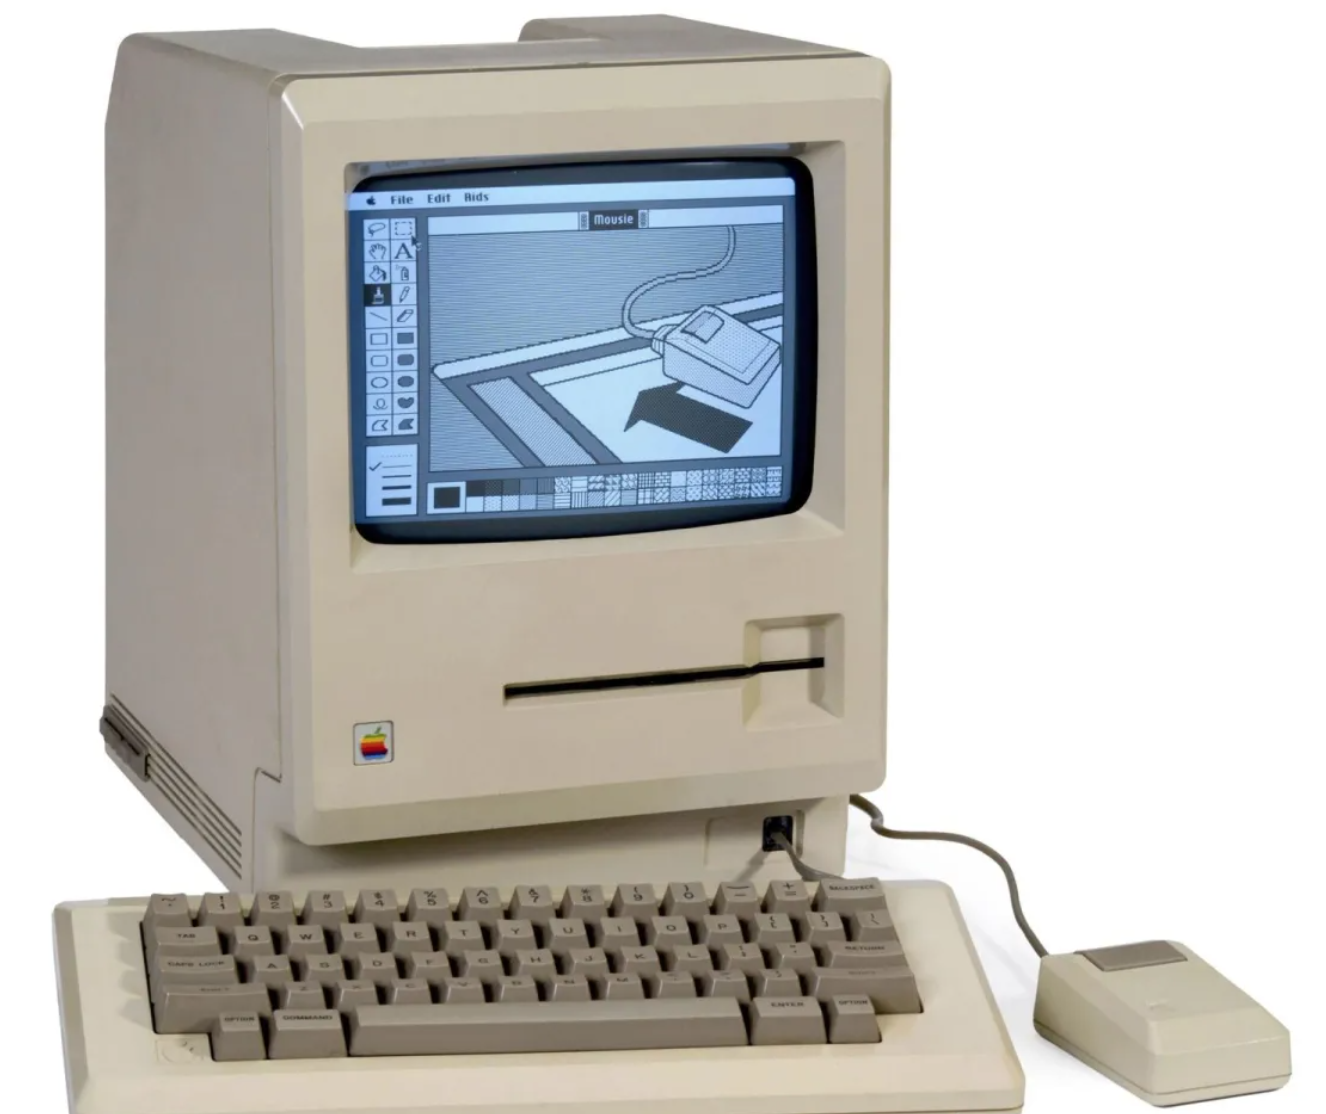 第一台计算机叫什么图片